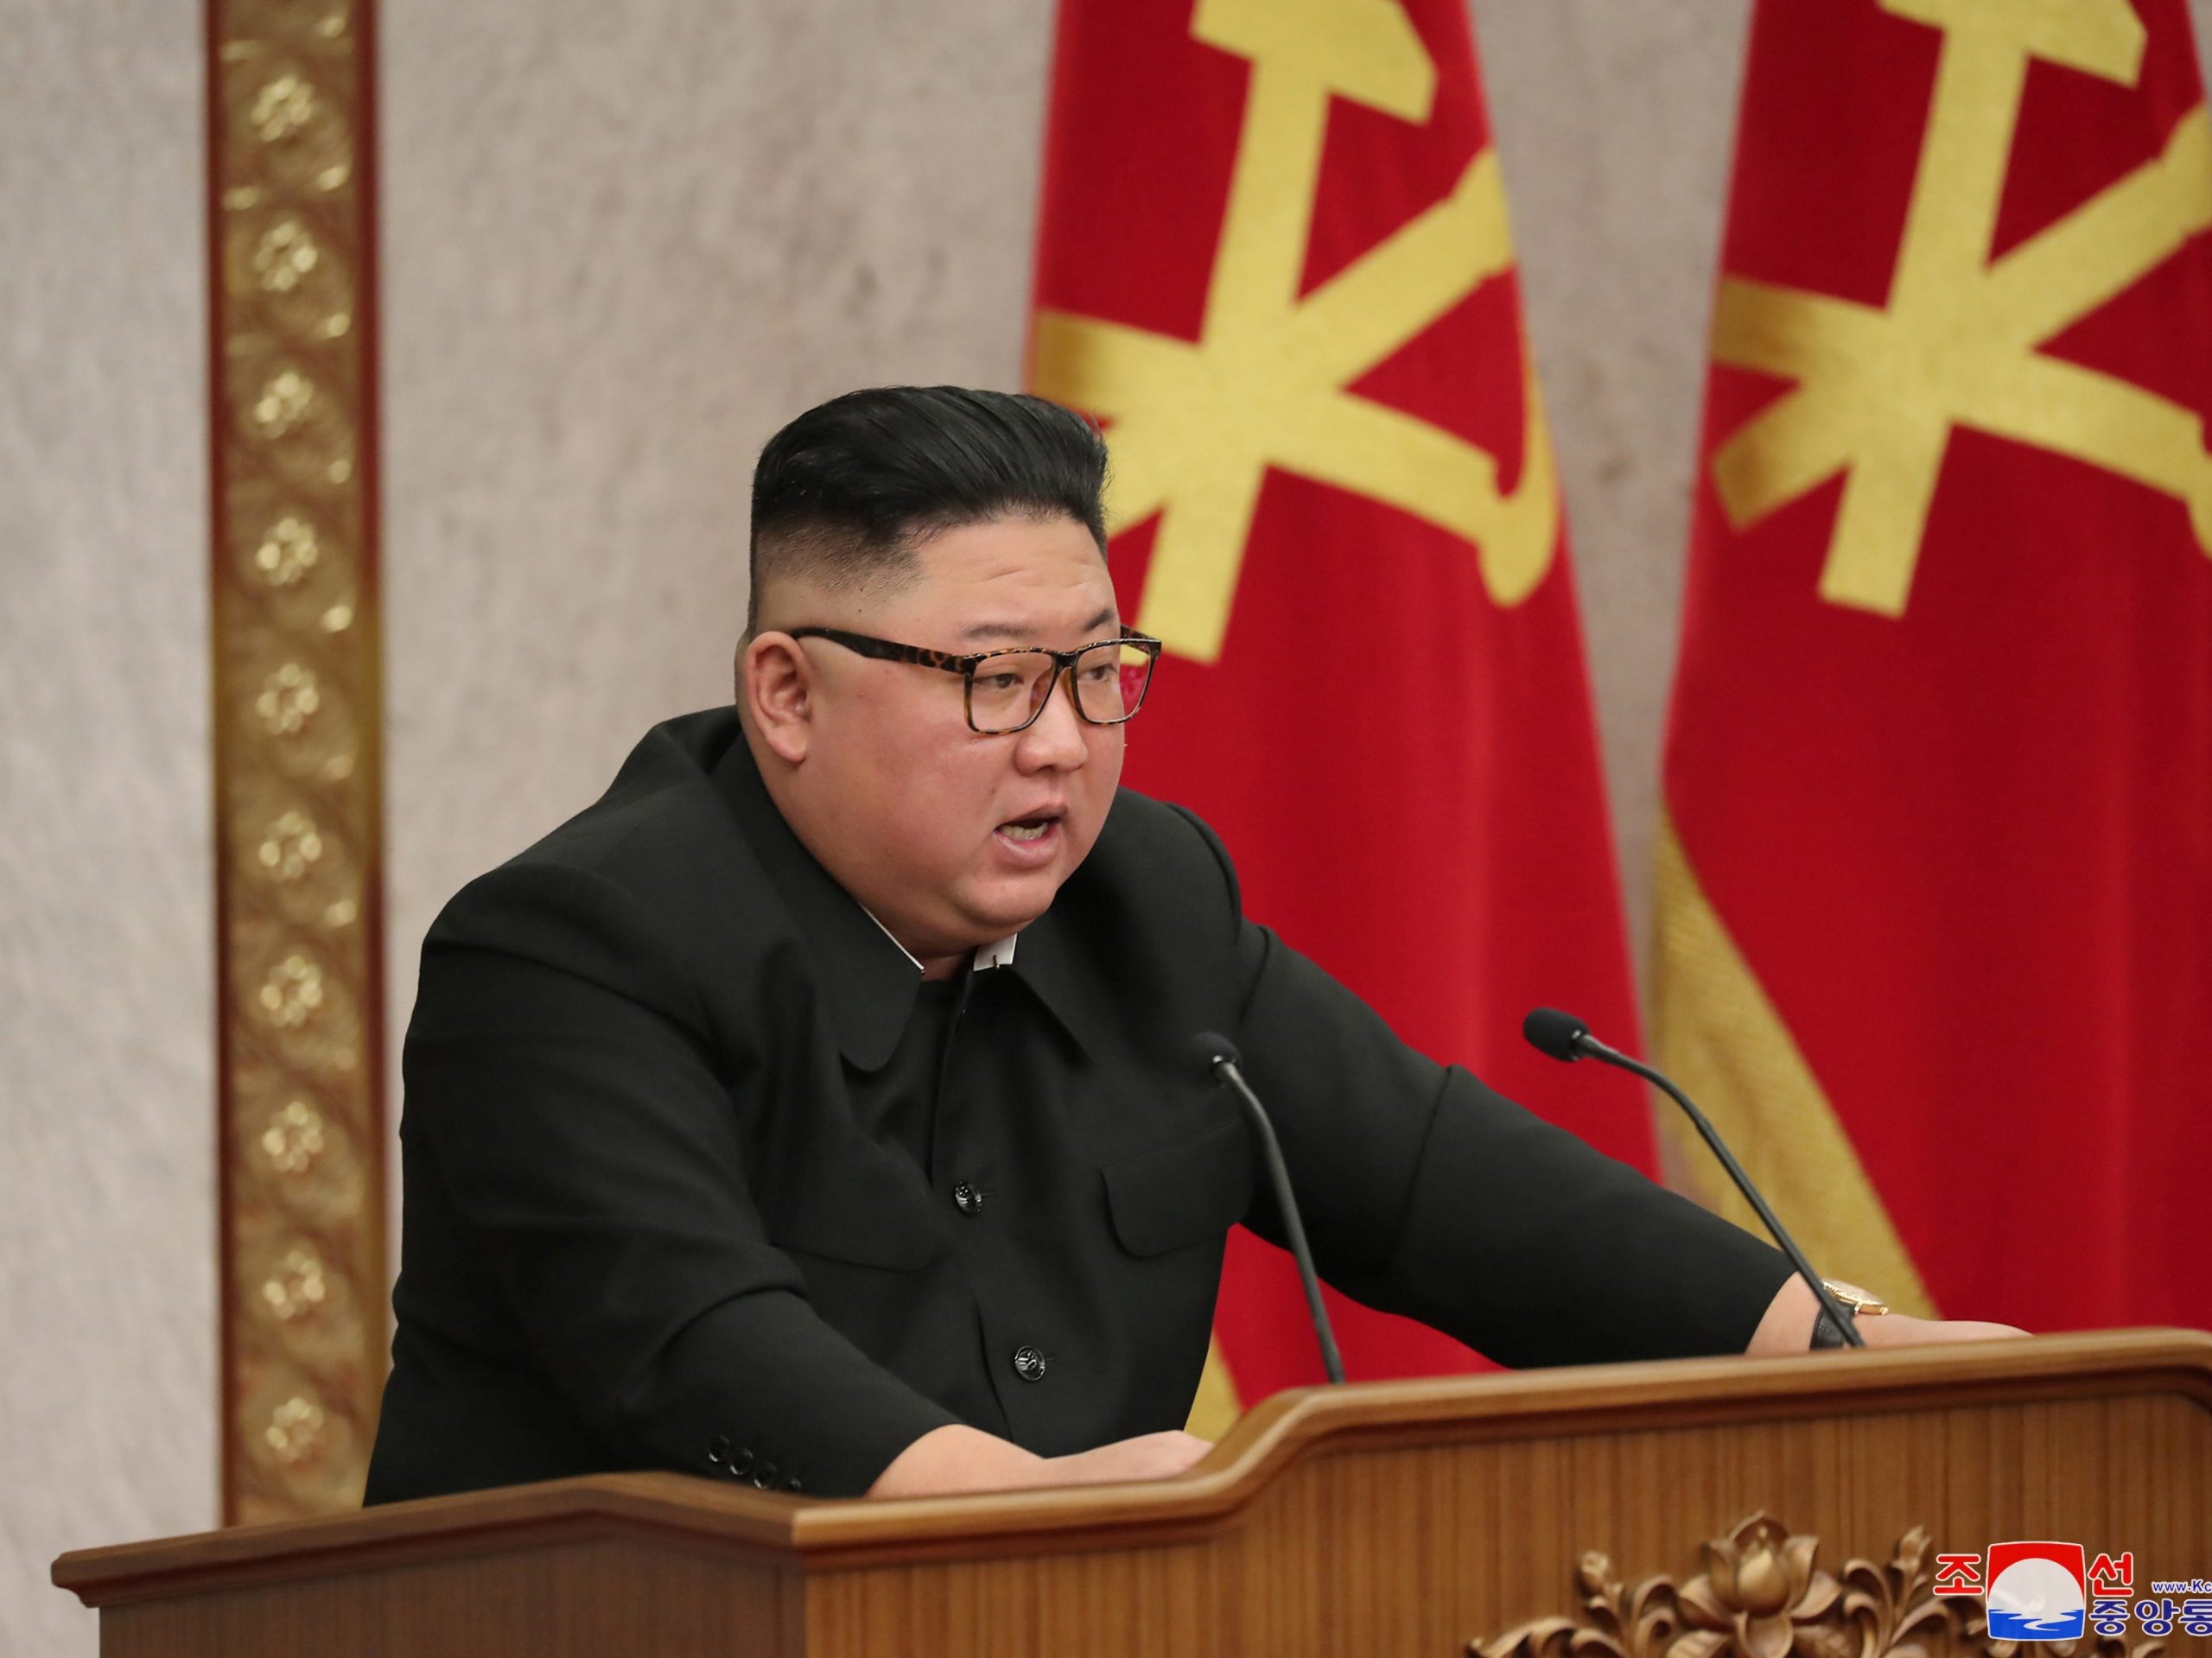 Kim Jong Un Speech